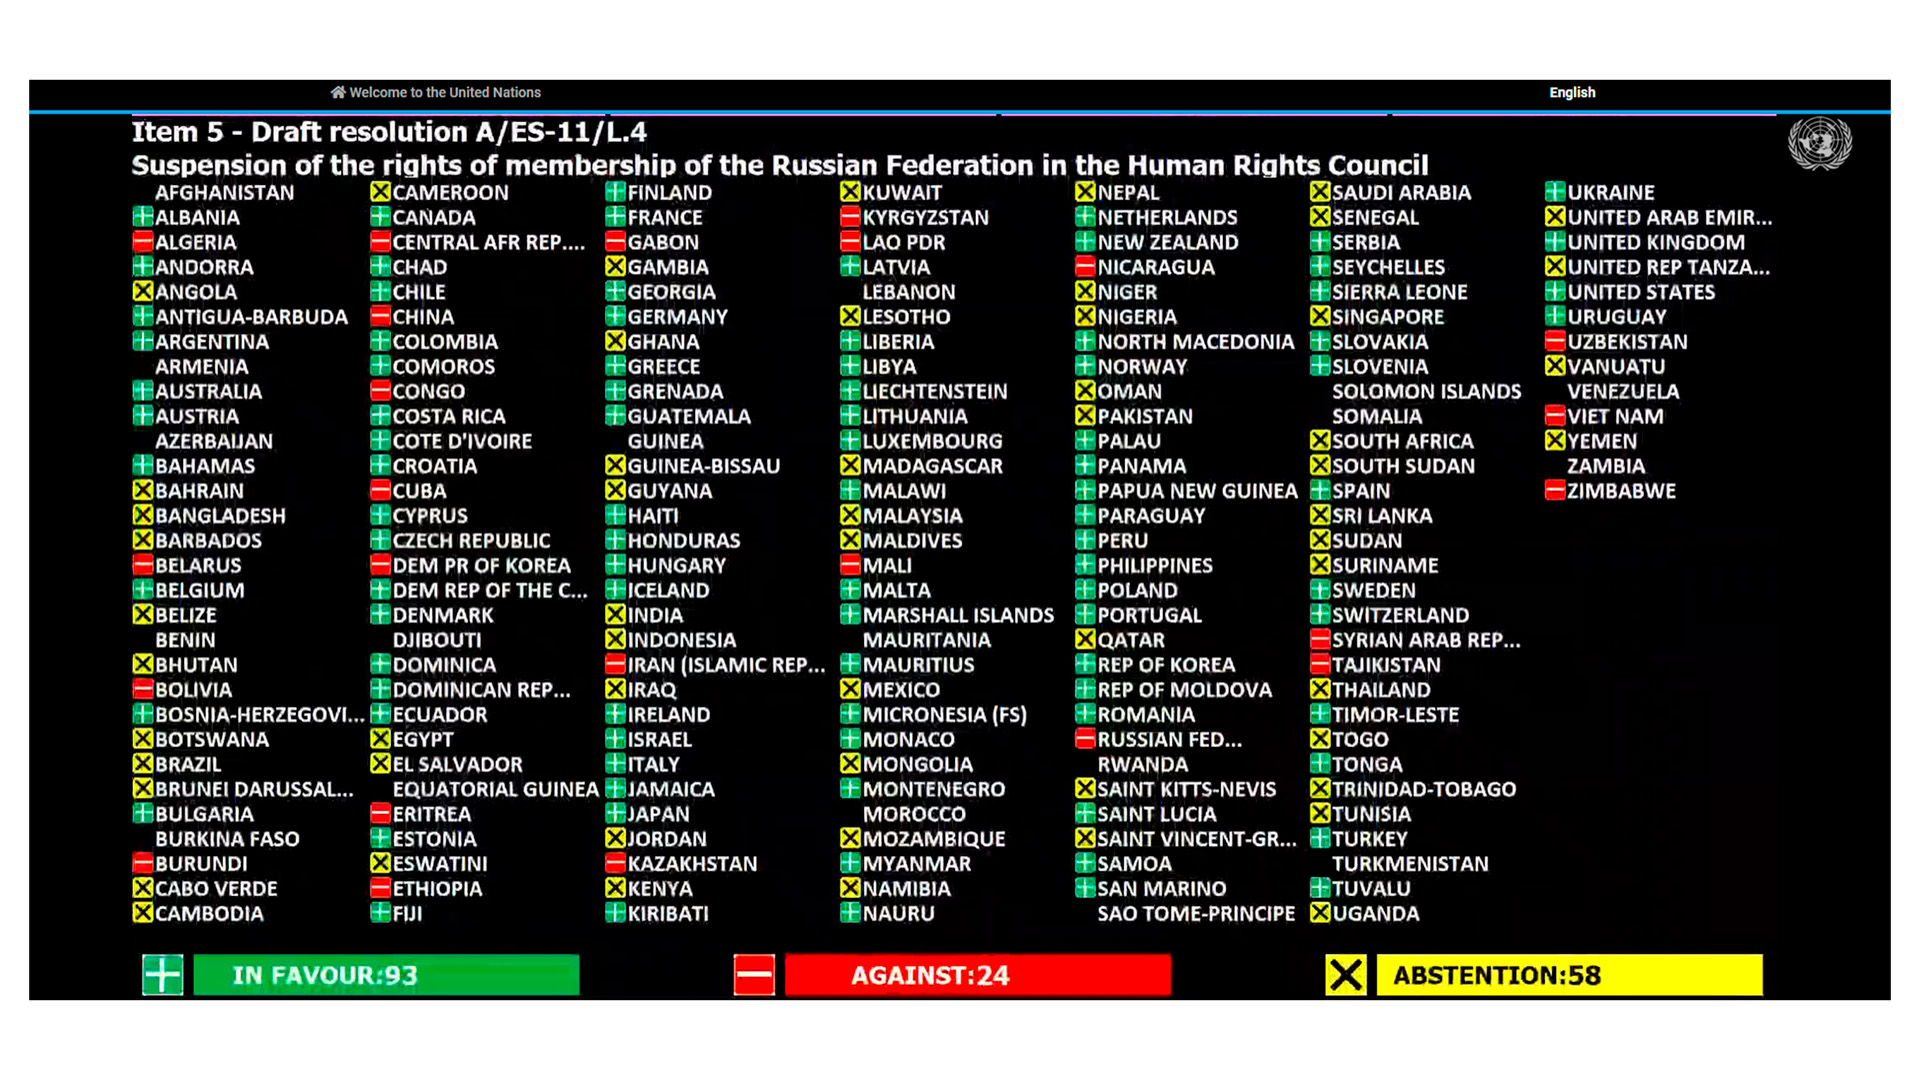 En verde los países que votaron a favor, en amarillo los que se abstuvieron y en rojo los que votaron en contra.
